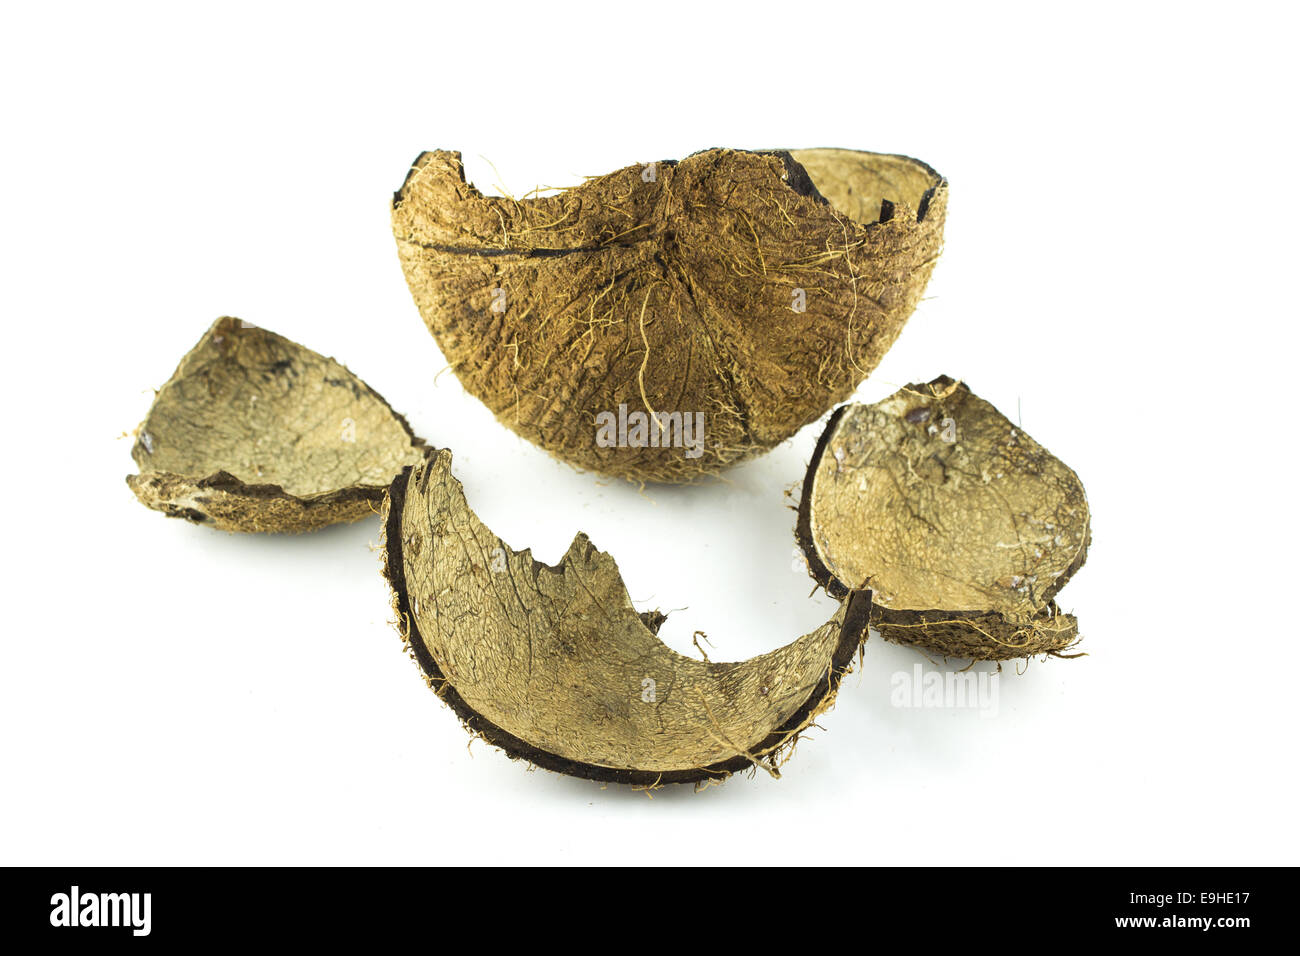 cracked coconut shell Stock Photo